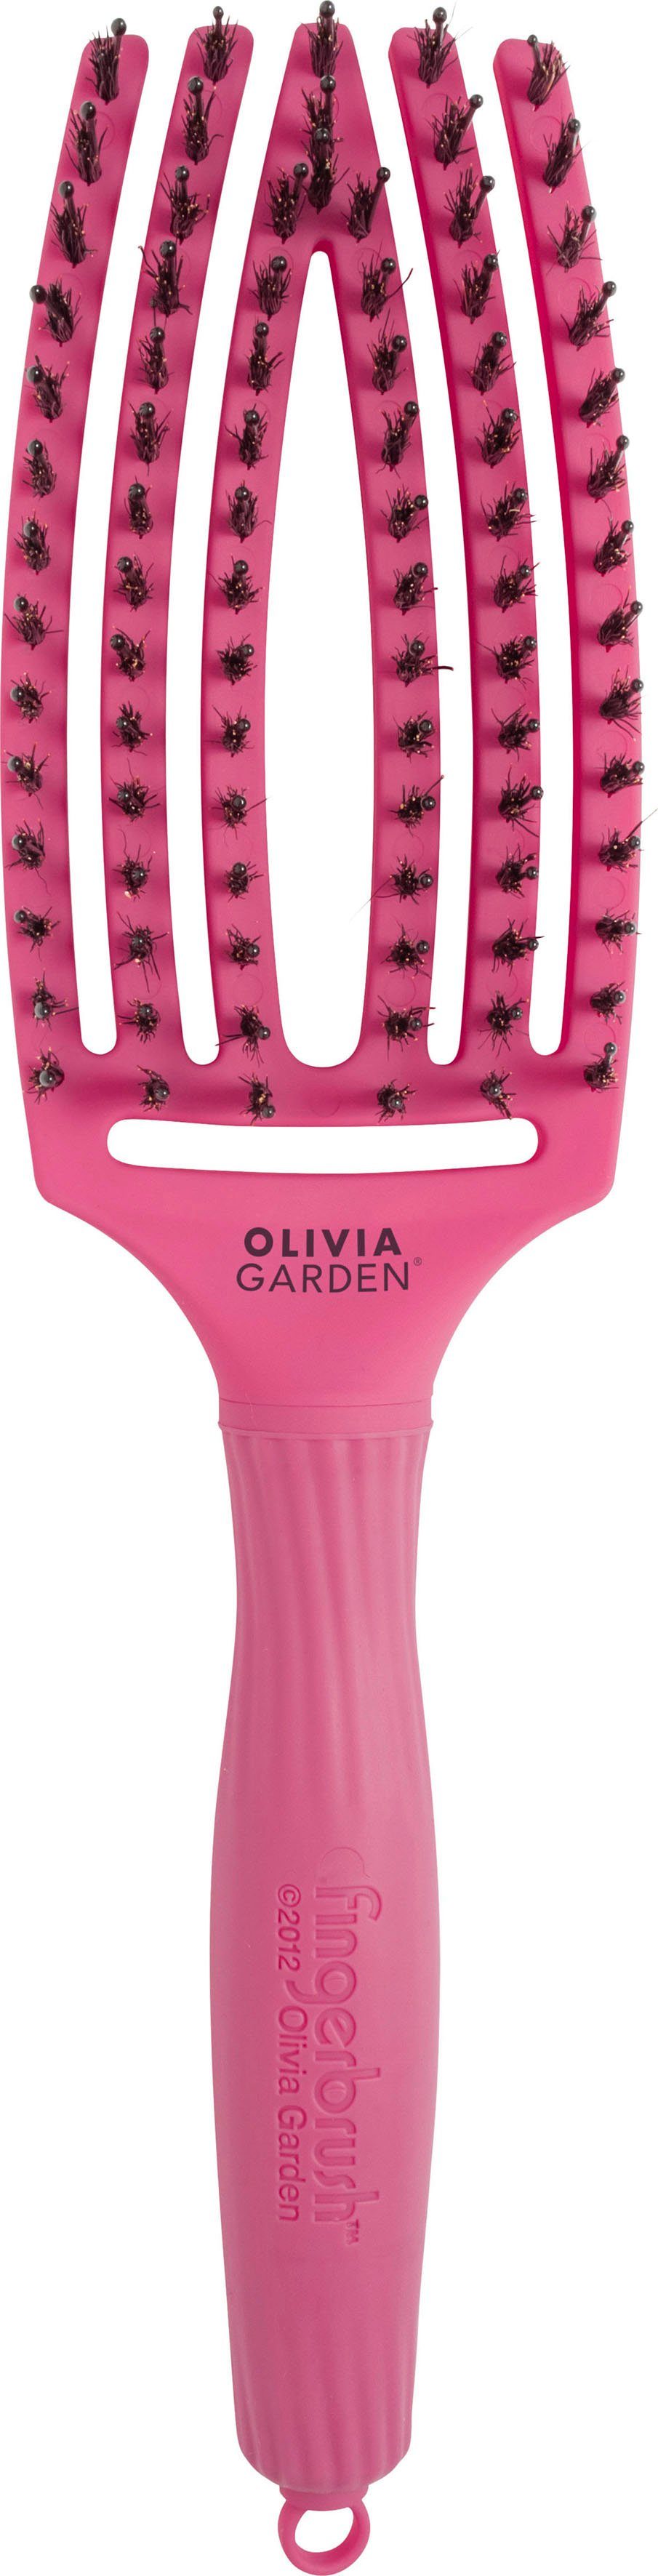 OLIVIA GARDEN Haarbürste Fingerbrush Combo Medium pink | Haarbürsten